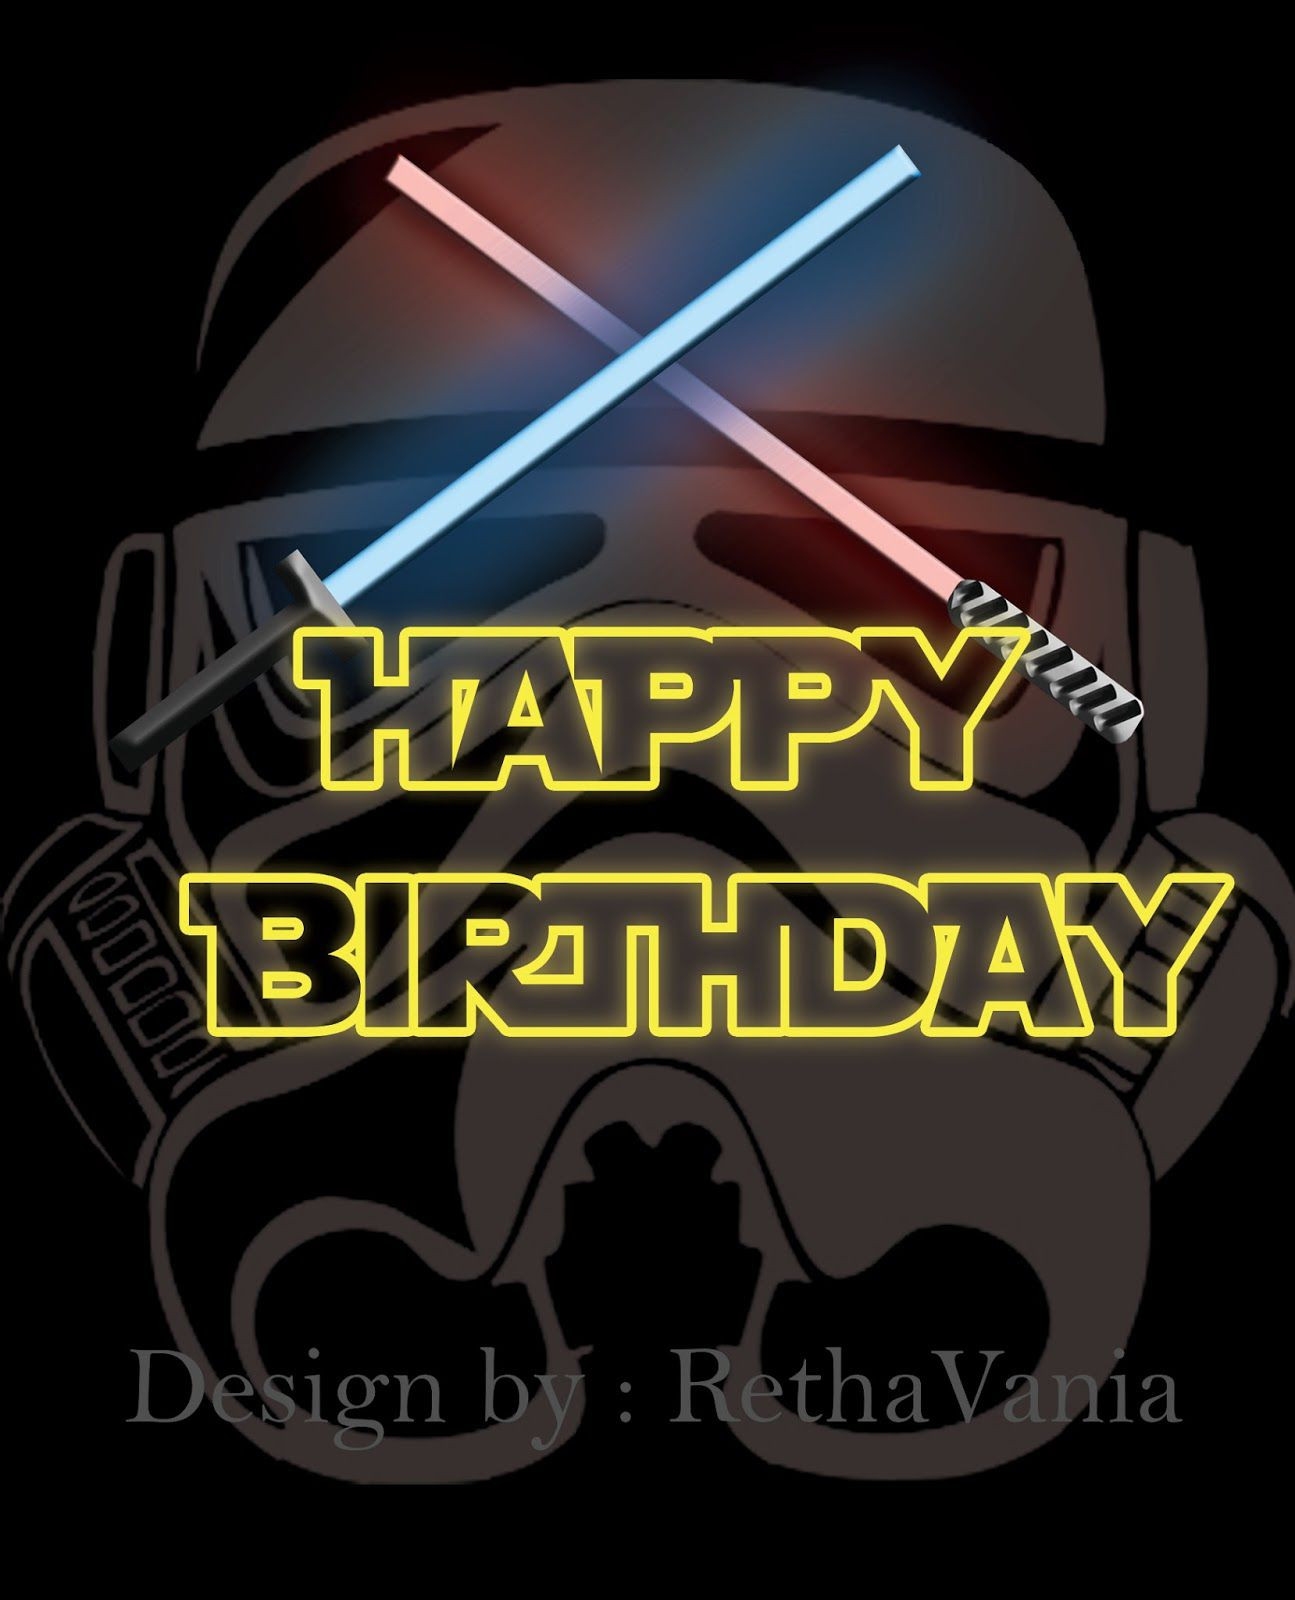 Geburtstagswünsche Star Wars
 Geburtstagskarten Star Wars